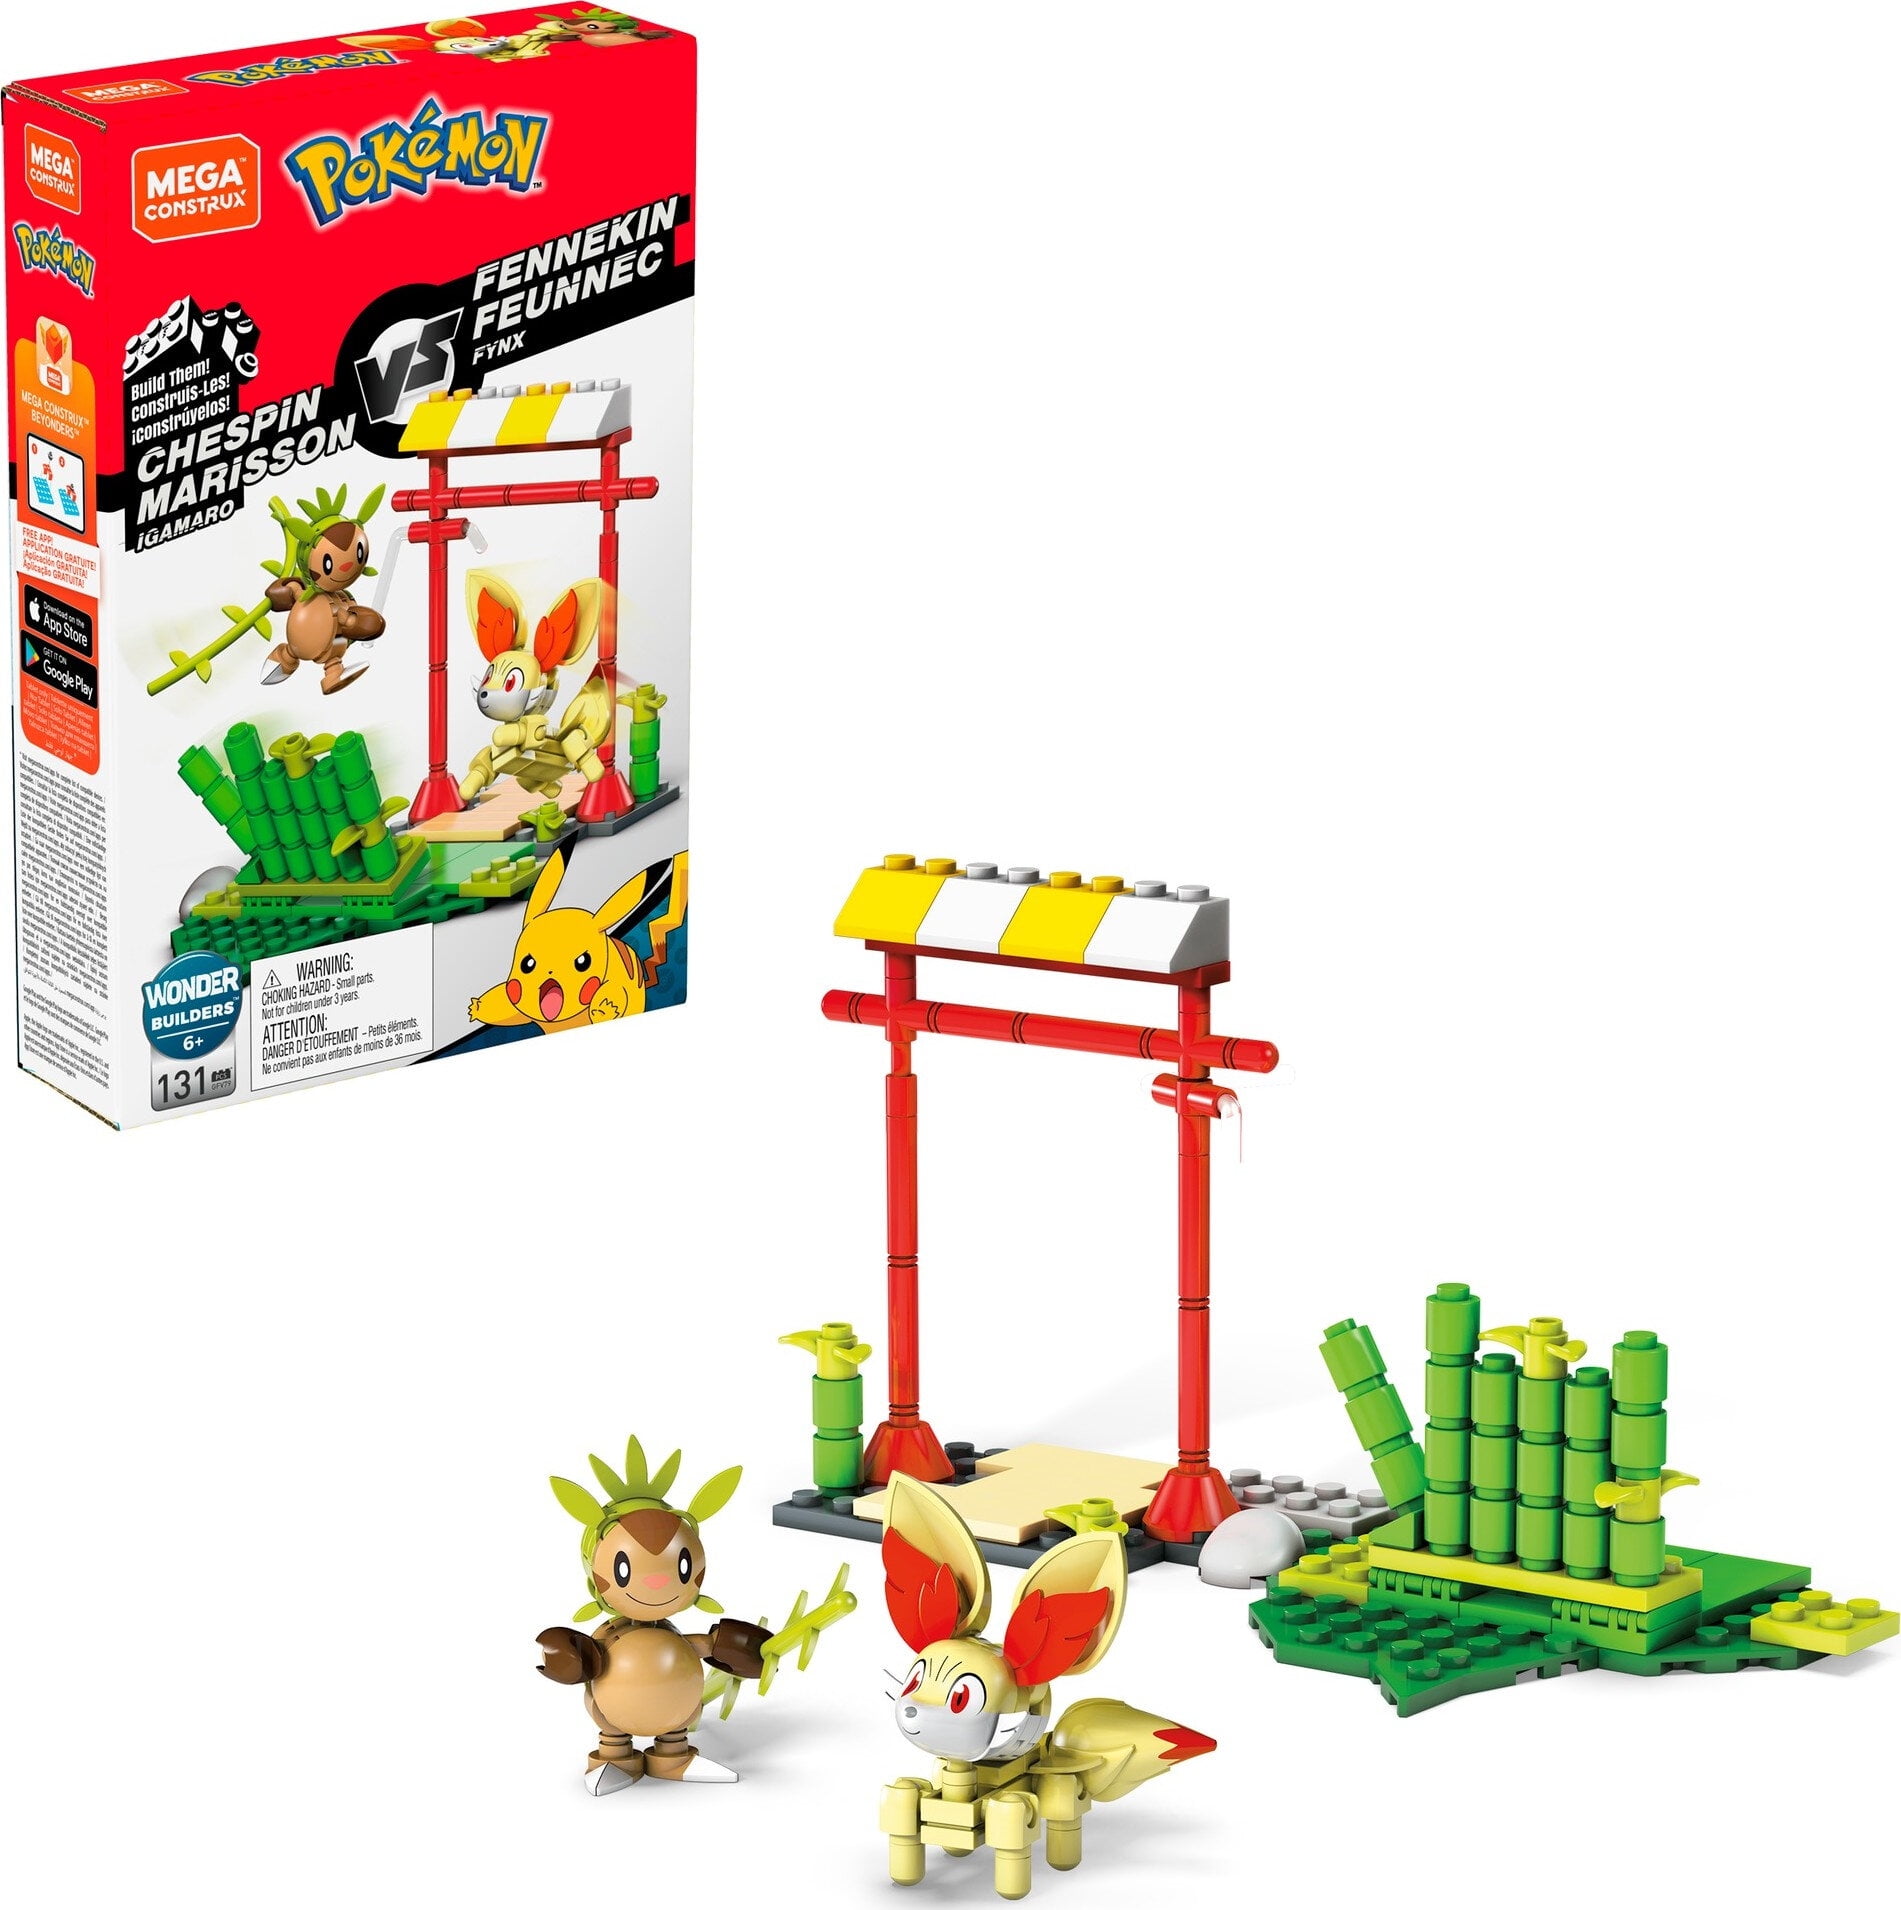  Pokemon Mega Construx Quad Set - Pikachu, Bulbasaur, and  Squirtle - 818 Pcs : Toys & Games